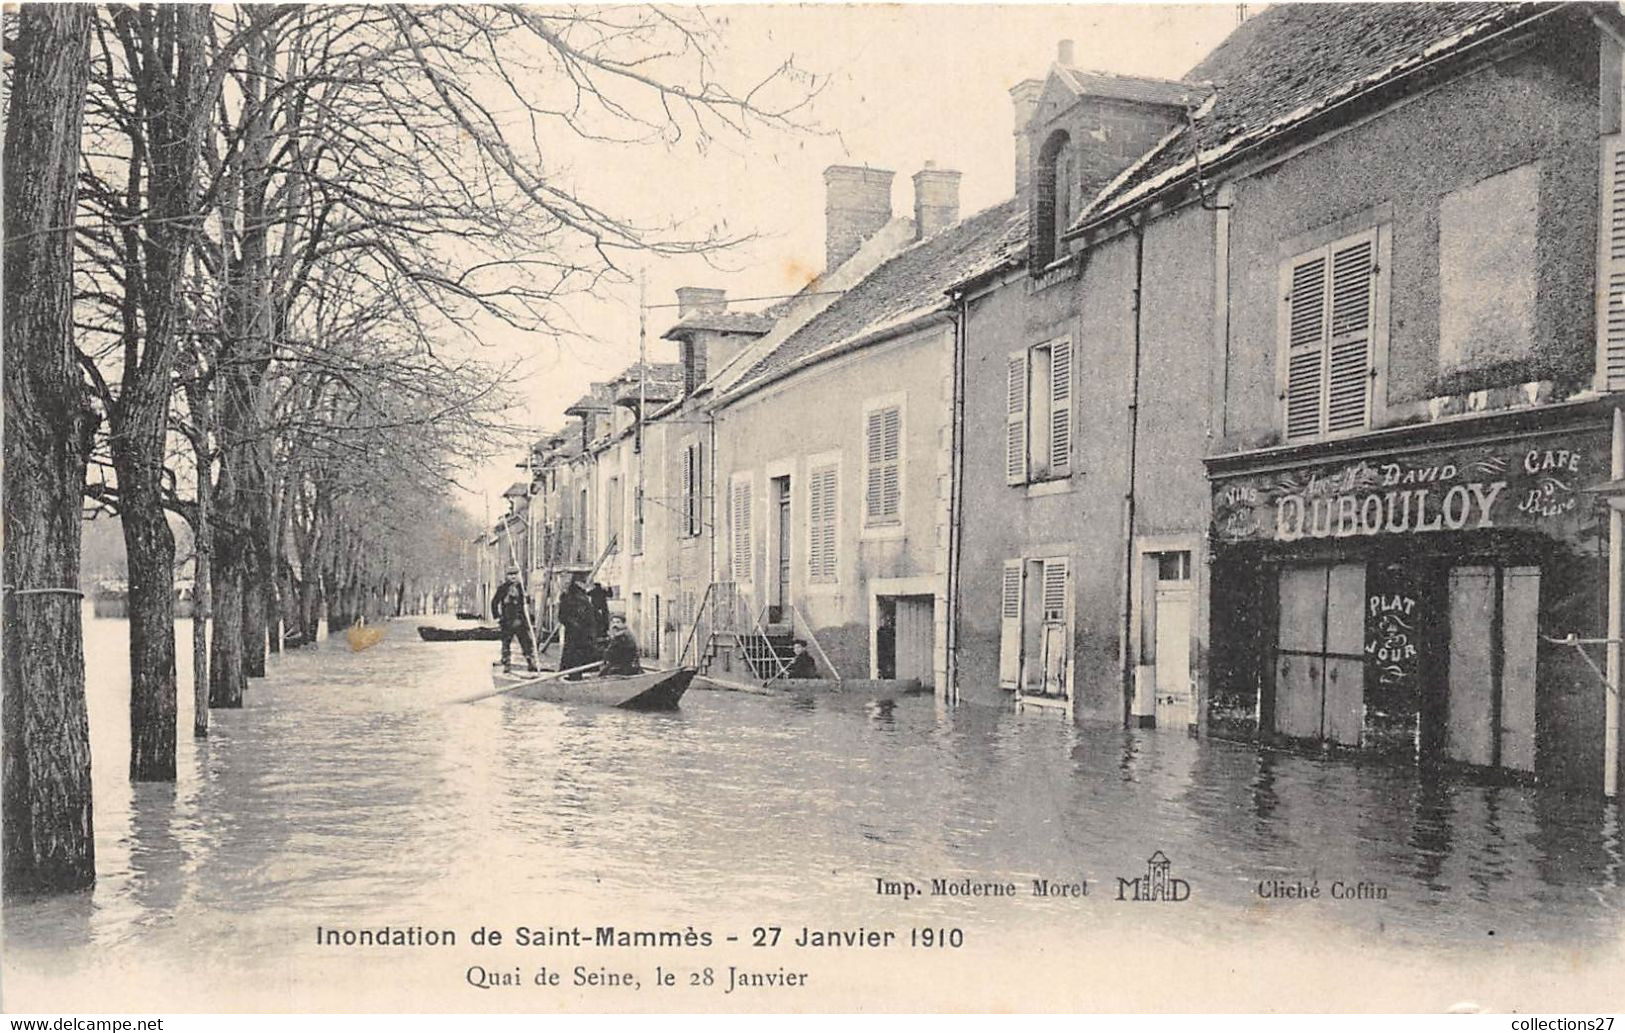 77-SAINT-MAMMES-INONDATION,  27 JANVIER 1910, QUAI DE SEINE, LE 28 JANVIER - Saint Mammes